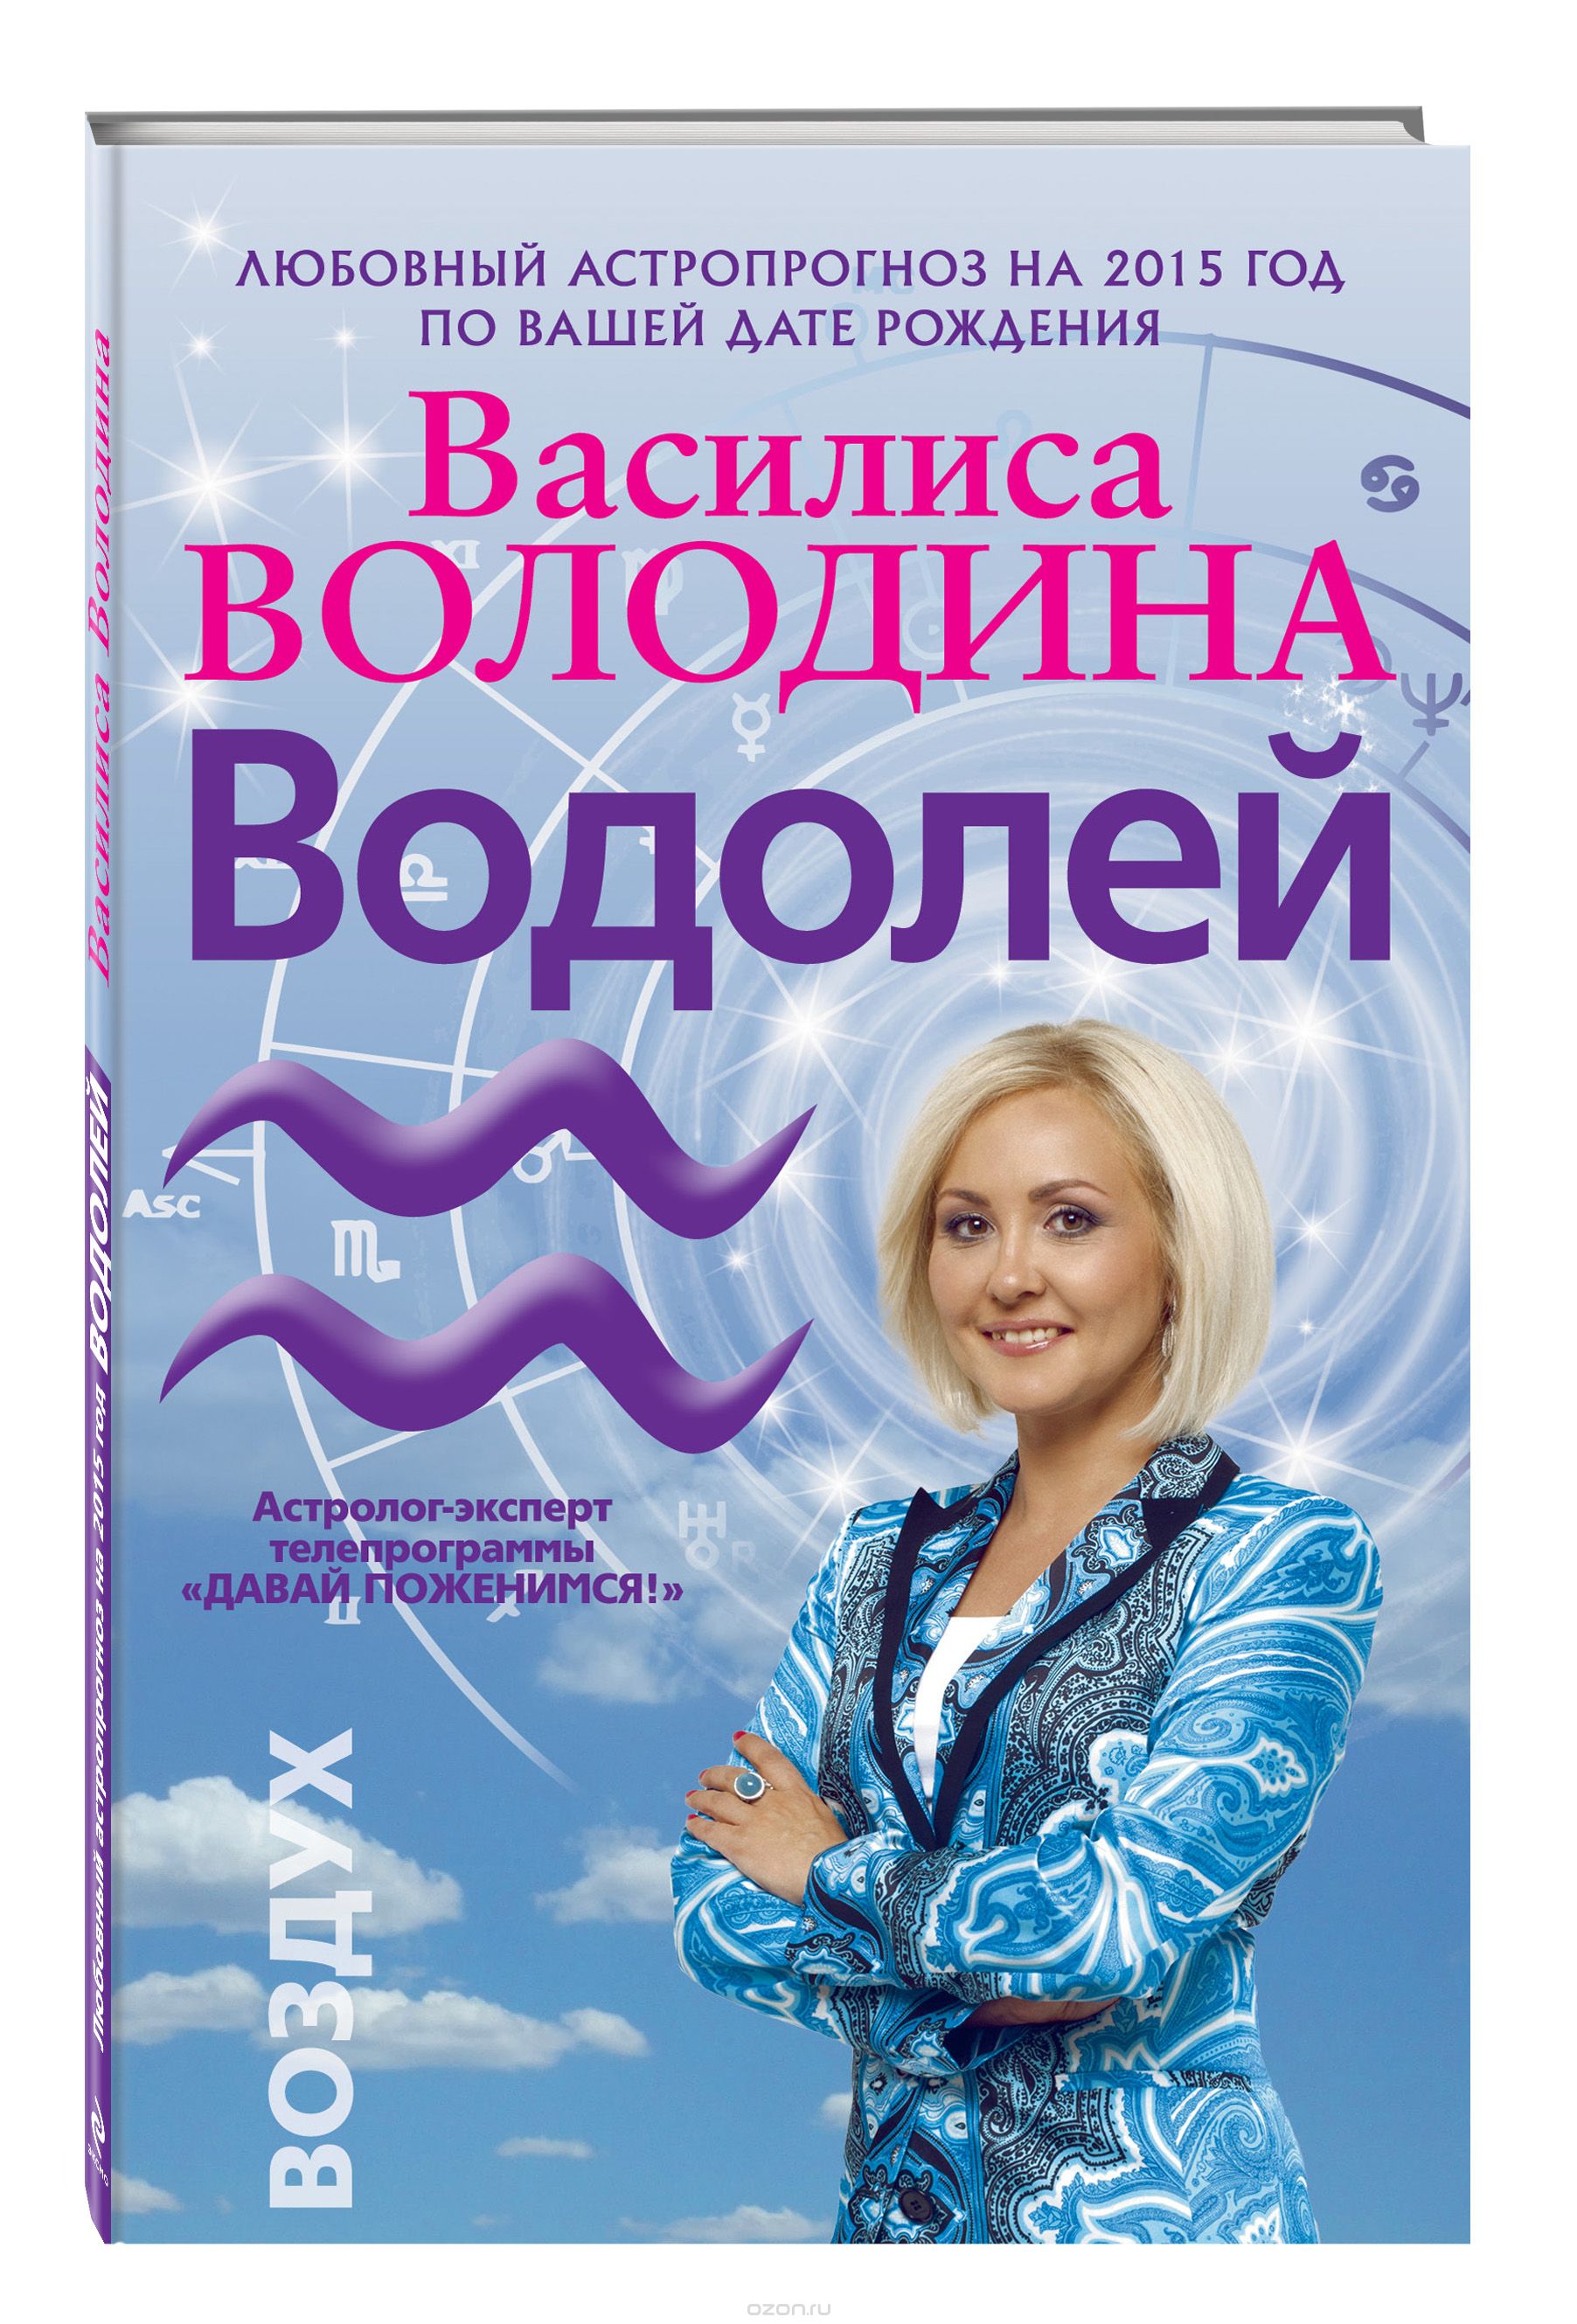 Скачать книгу "Водолей. Любовный астропрогноз на 2015 год, Володина Василиса"